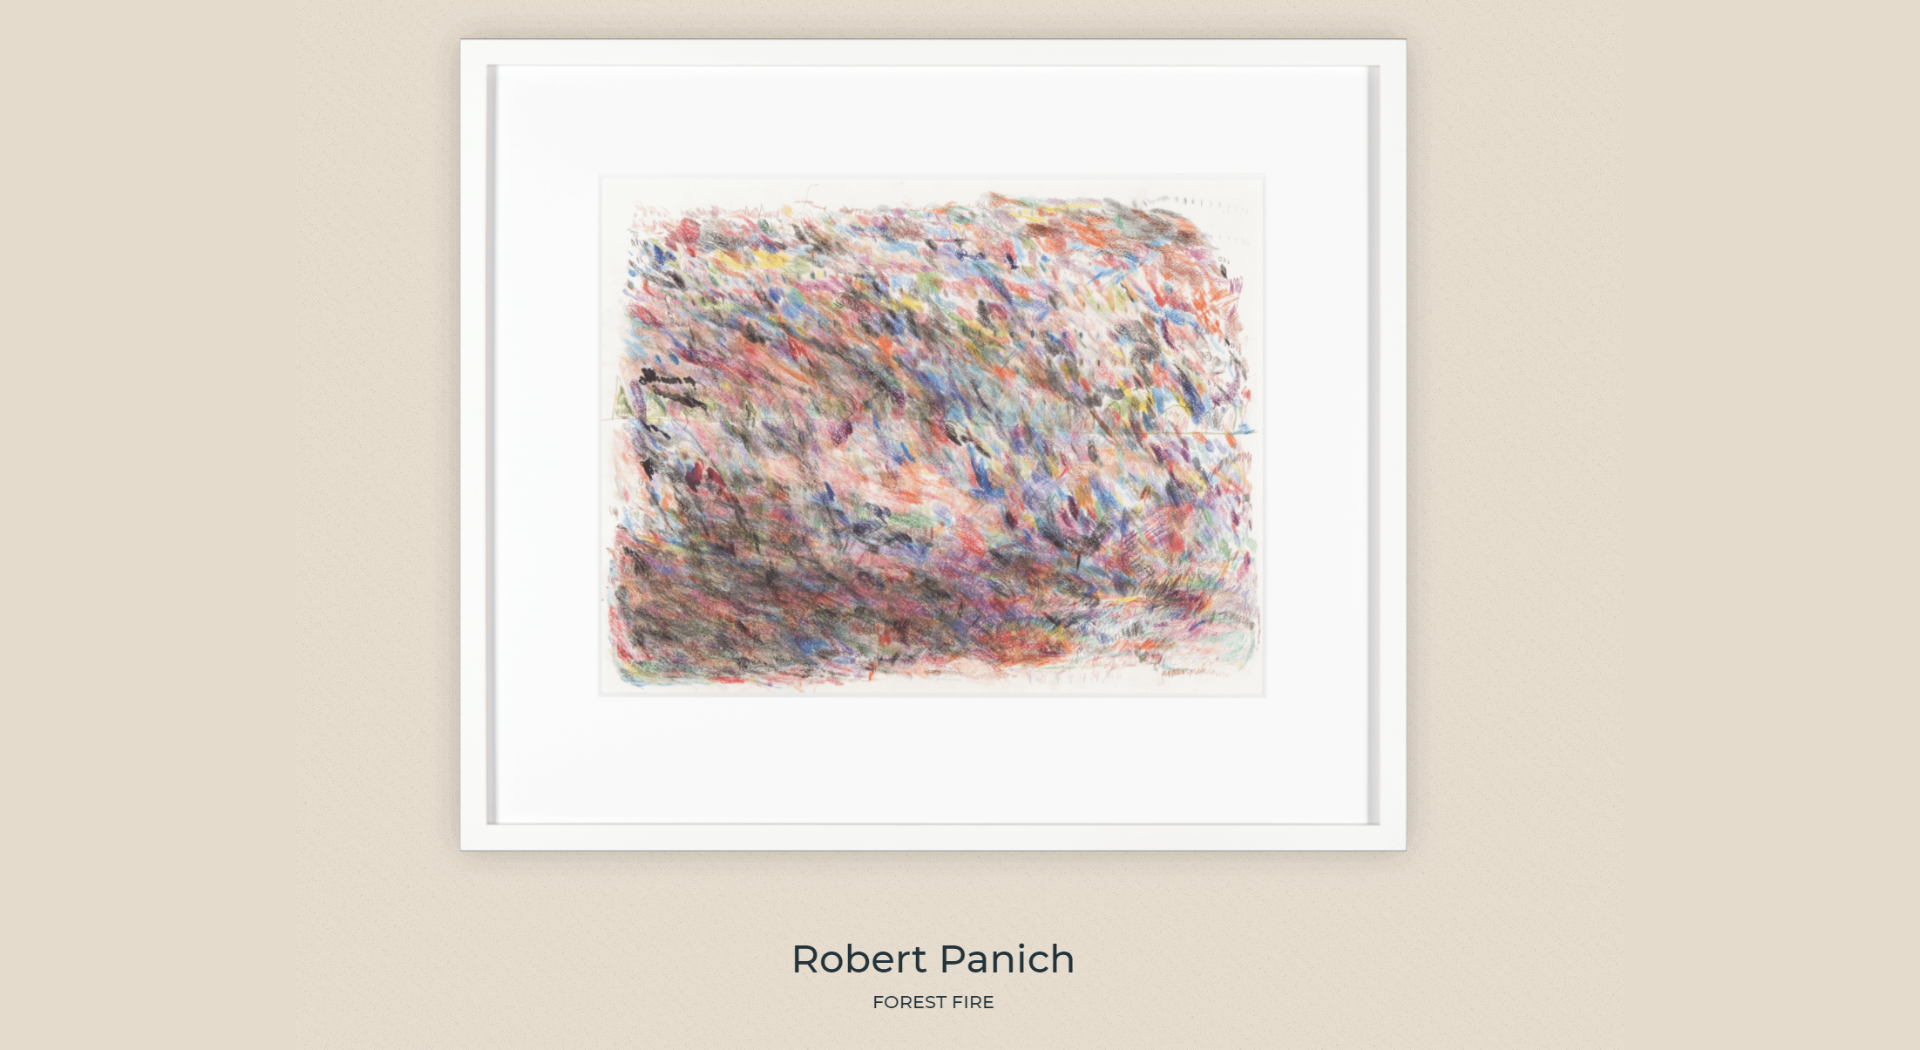 Robert Panich: Forest Fire